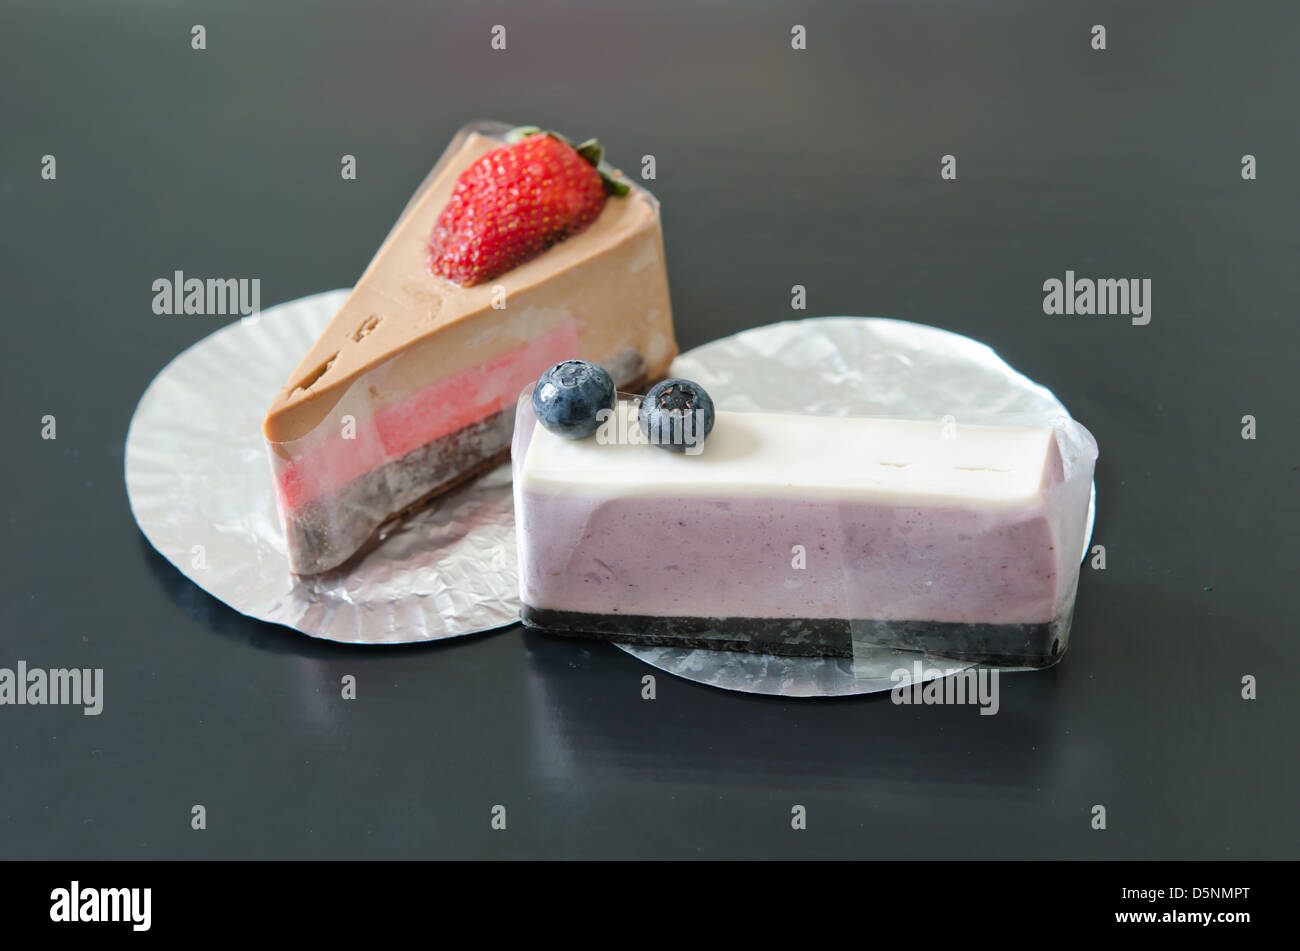 blueberries cheesecake and strawberry cheesecake , sweet dessert Stock Photo